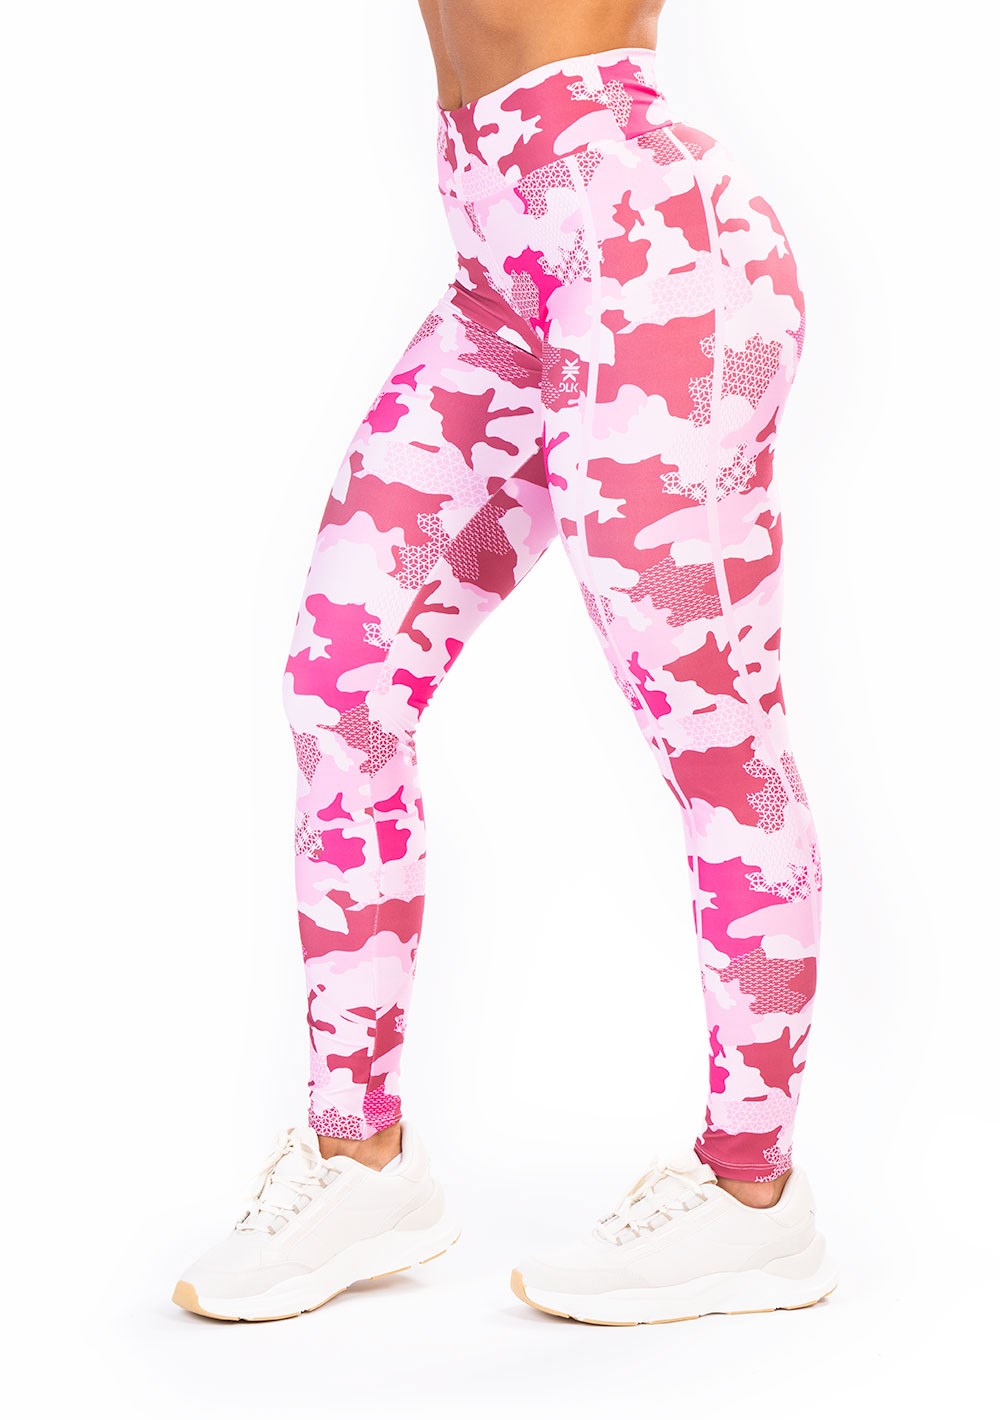 Legging fitness feminina new printed estampada camuflado rosa